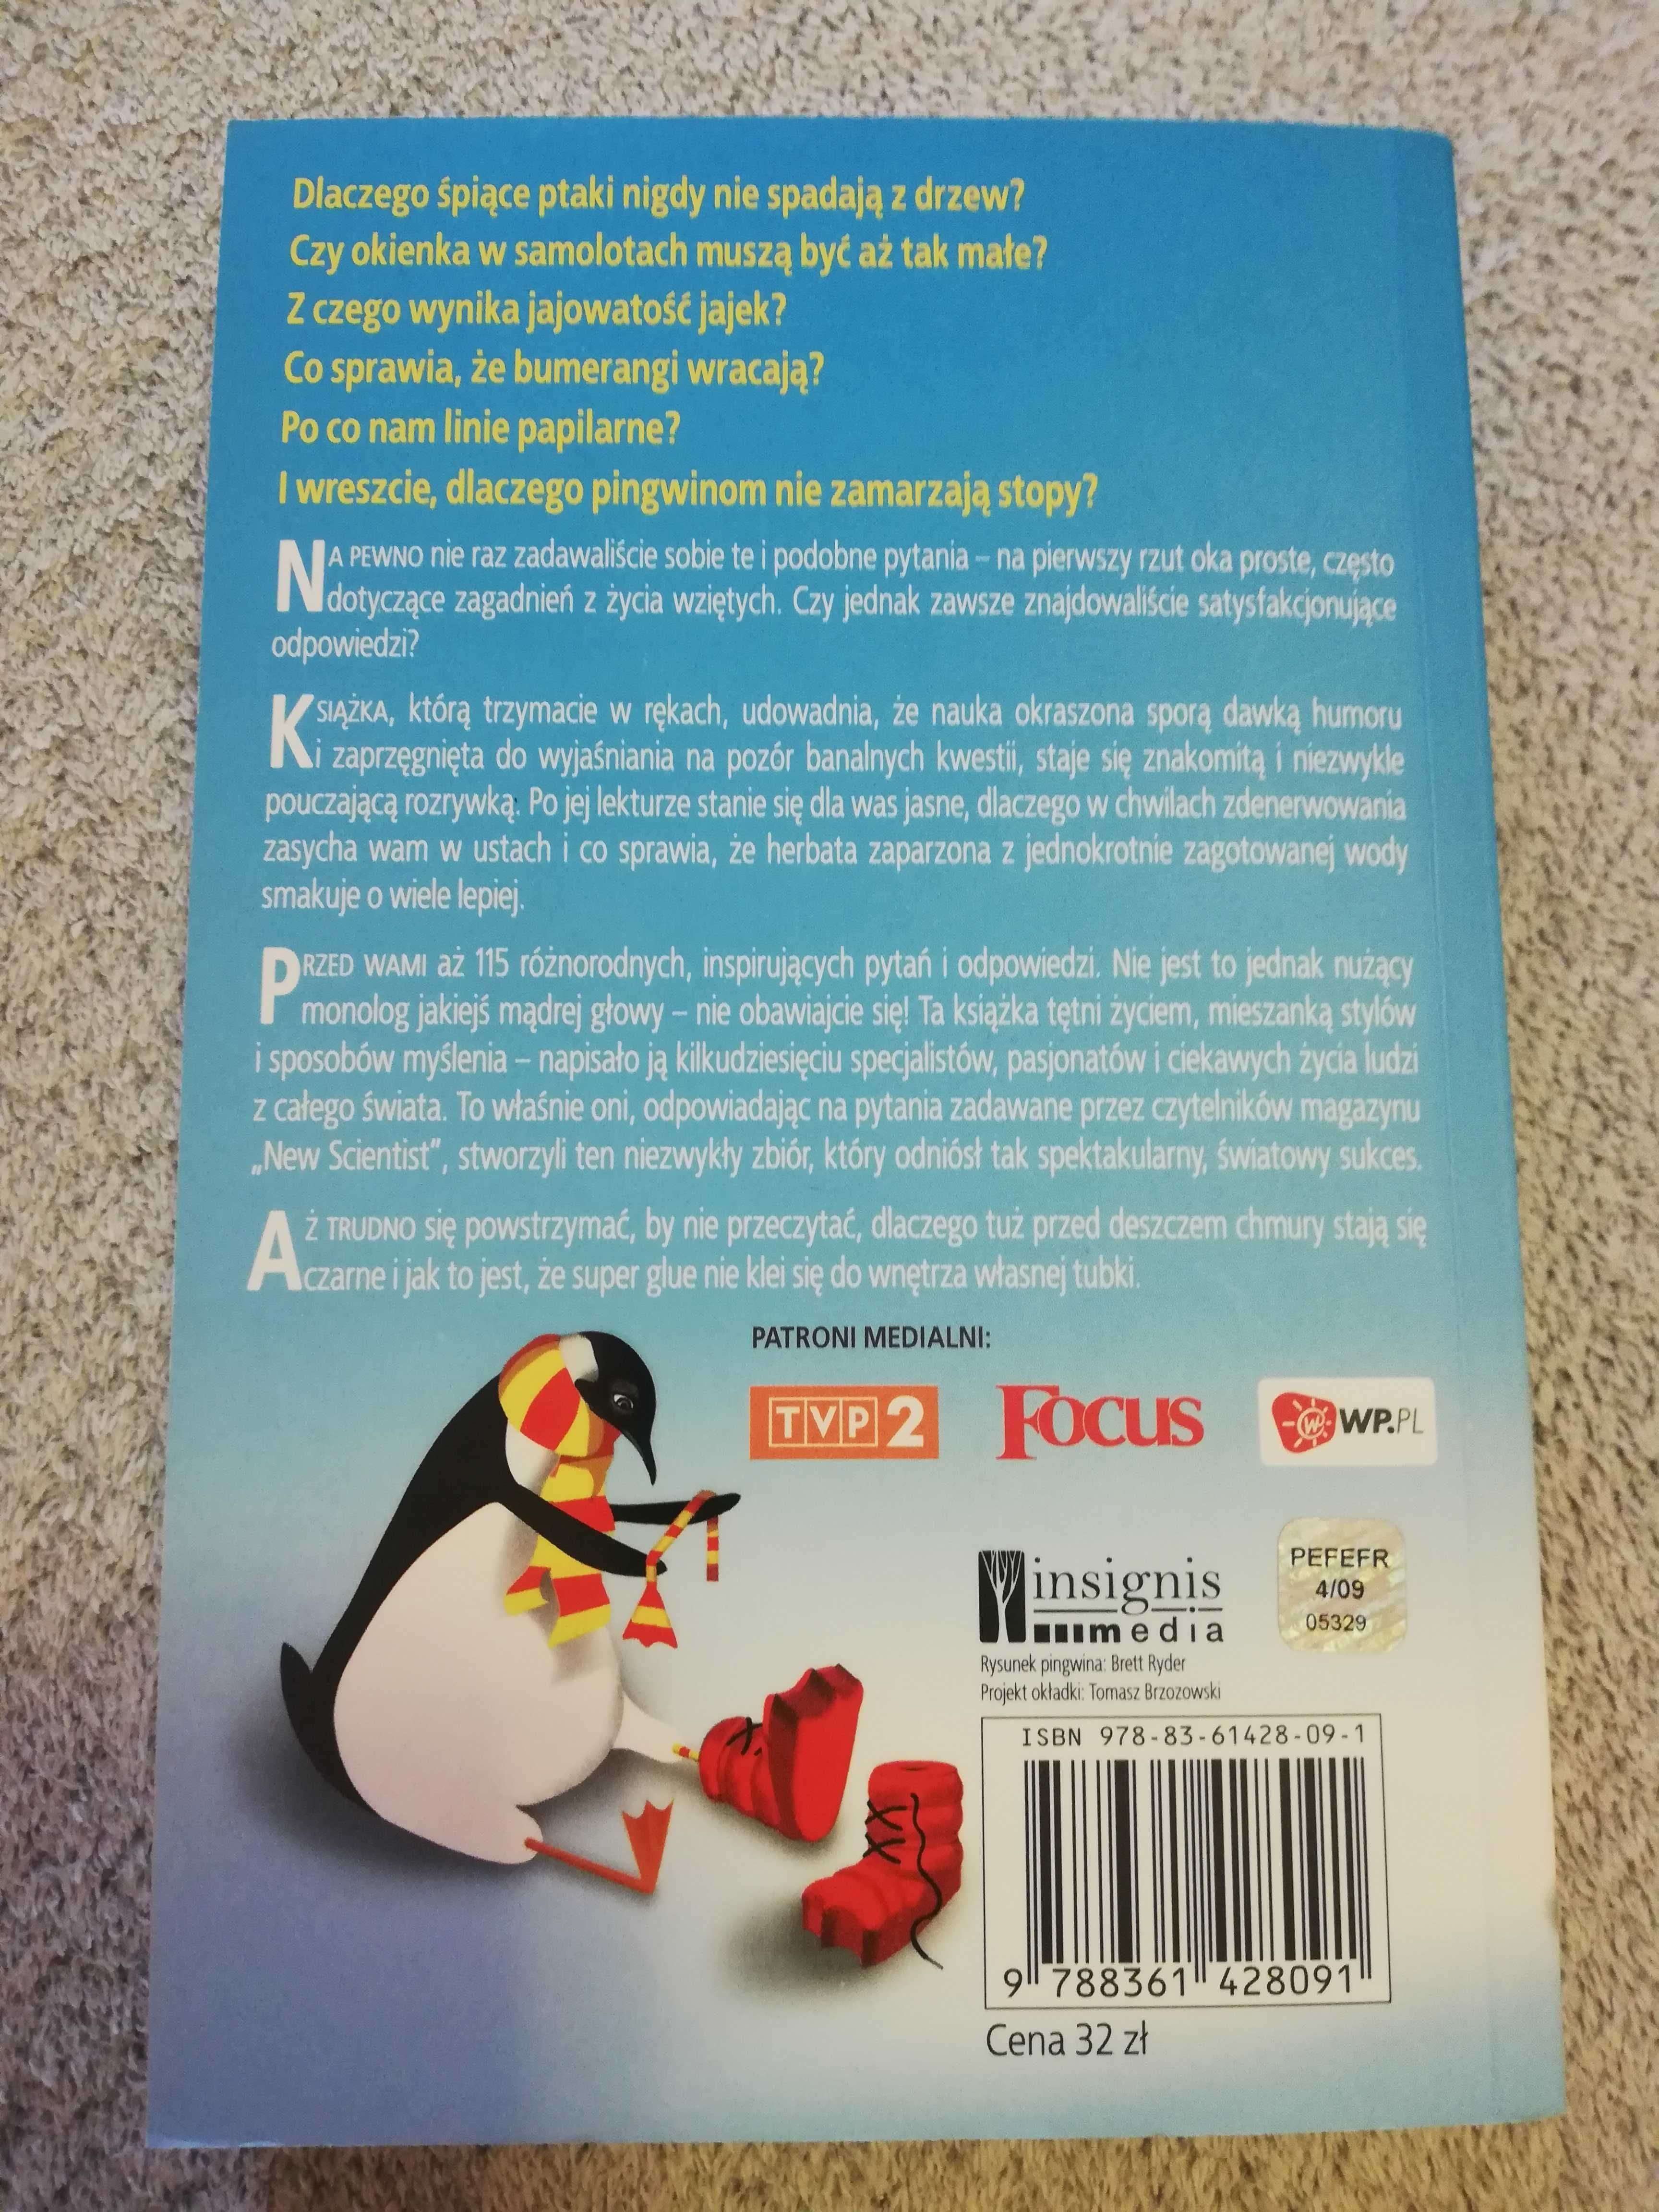 Dlaczego pingwinom nie zamarzają stopy